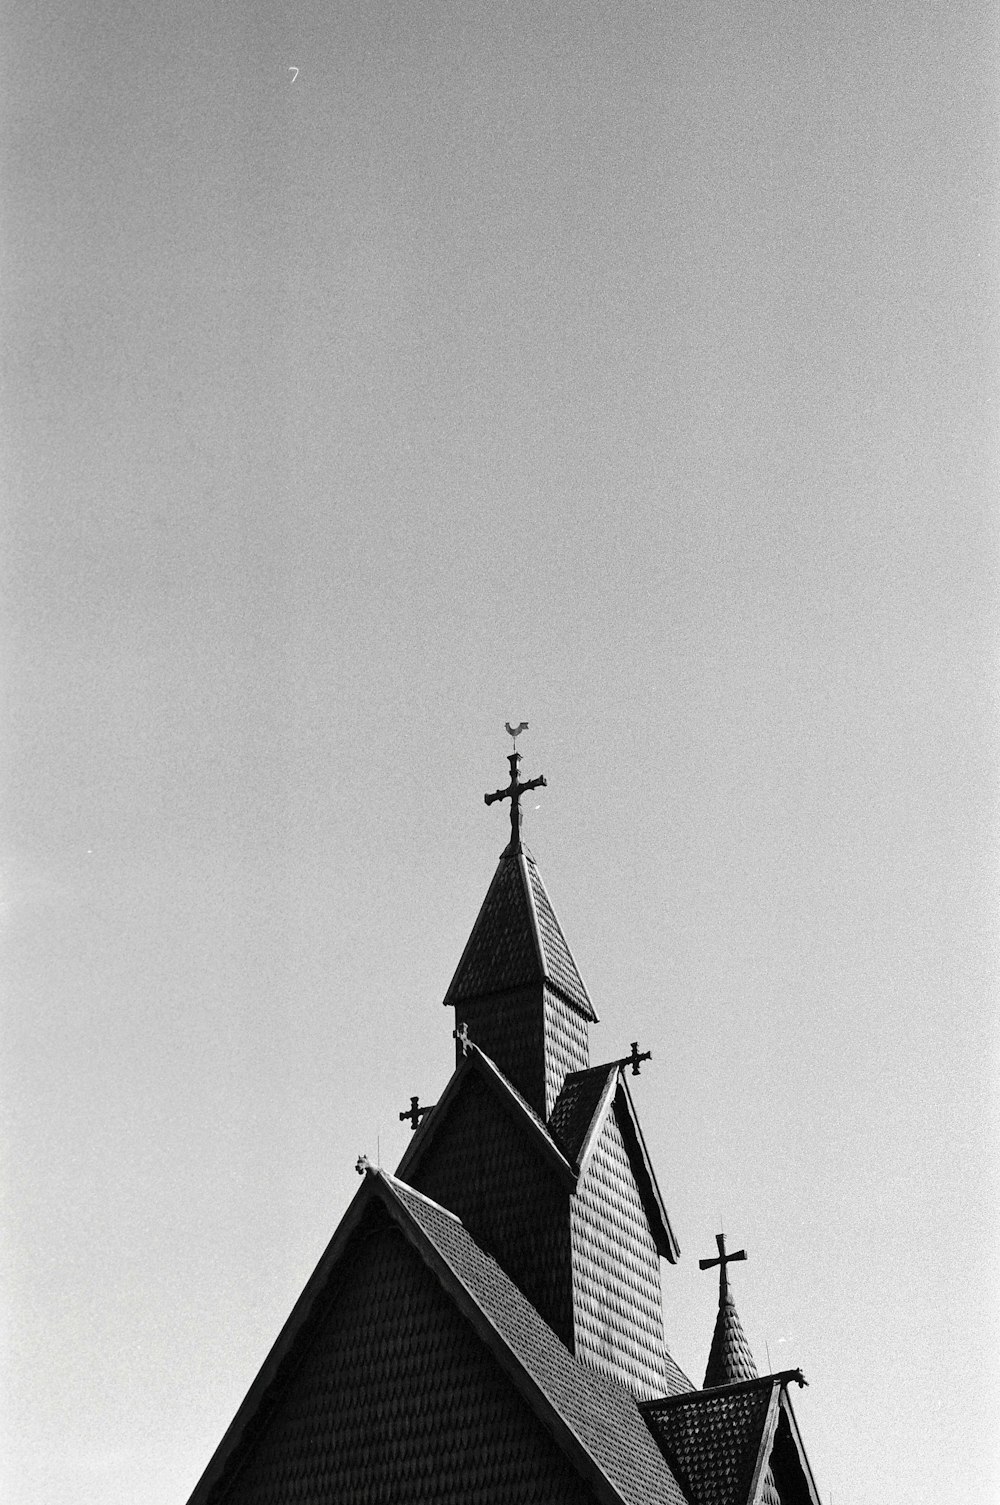 Photographie en niveaux de gris de l’église